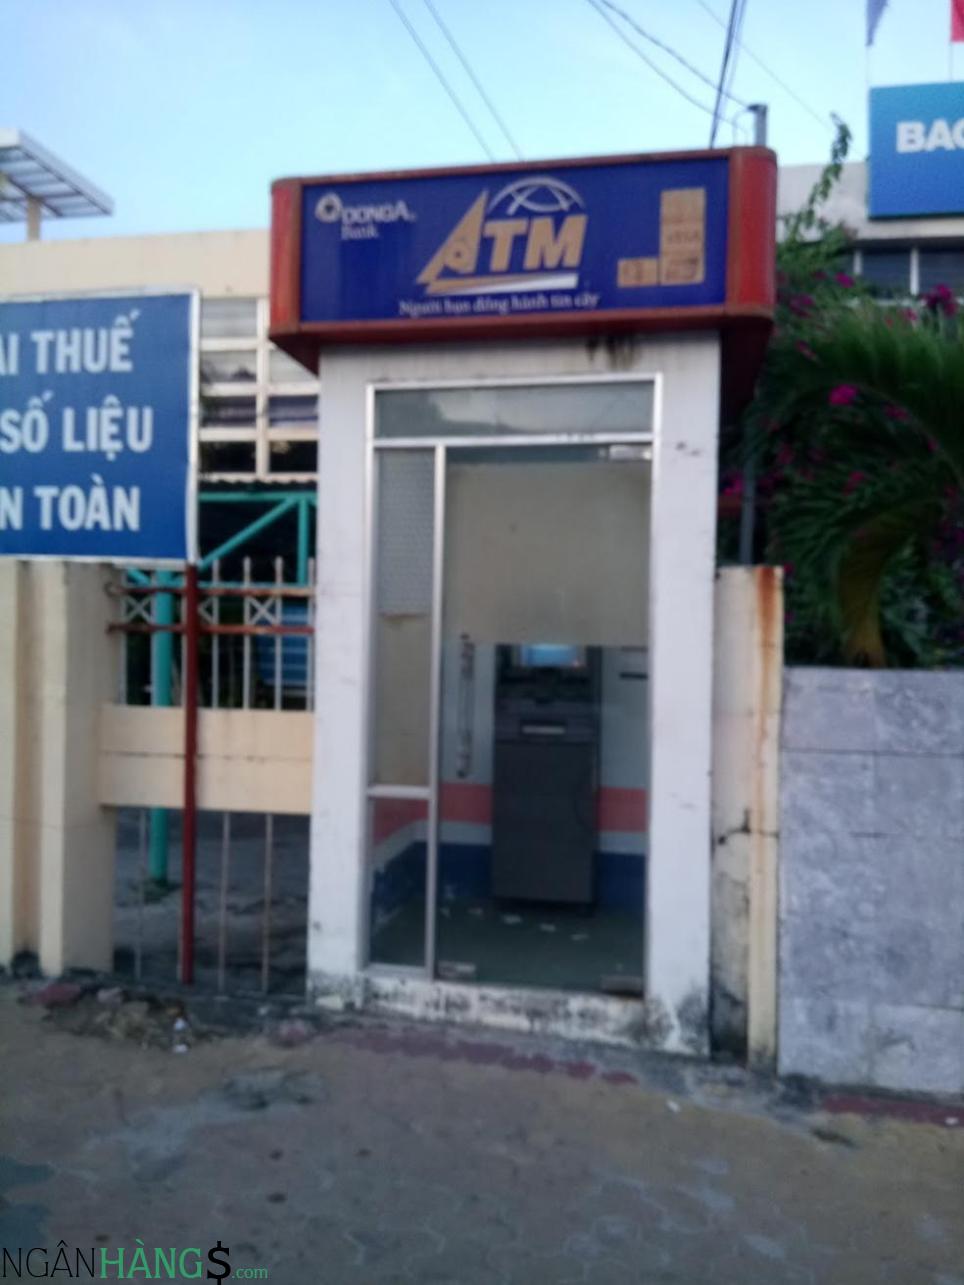 Ảnh Cây ATM ngân hàng Đông Á DongABank Điện lực Hóc Môn 1